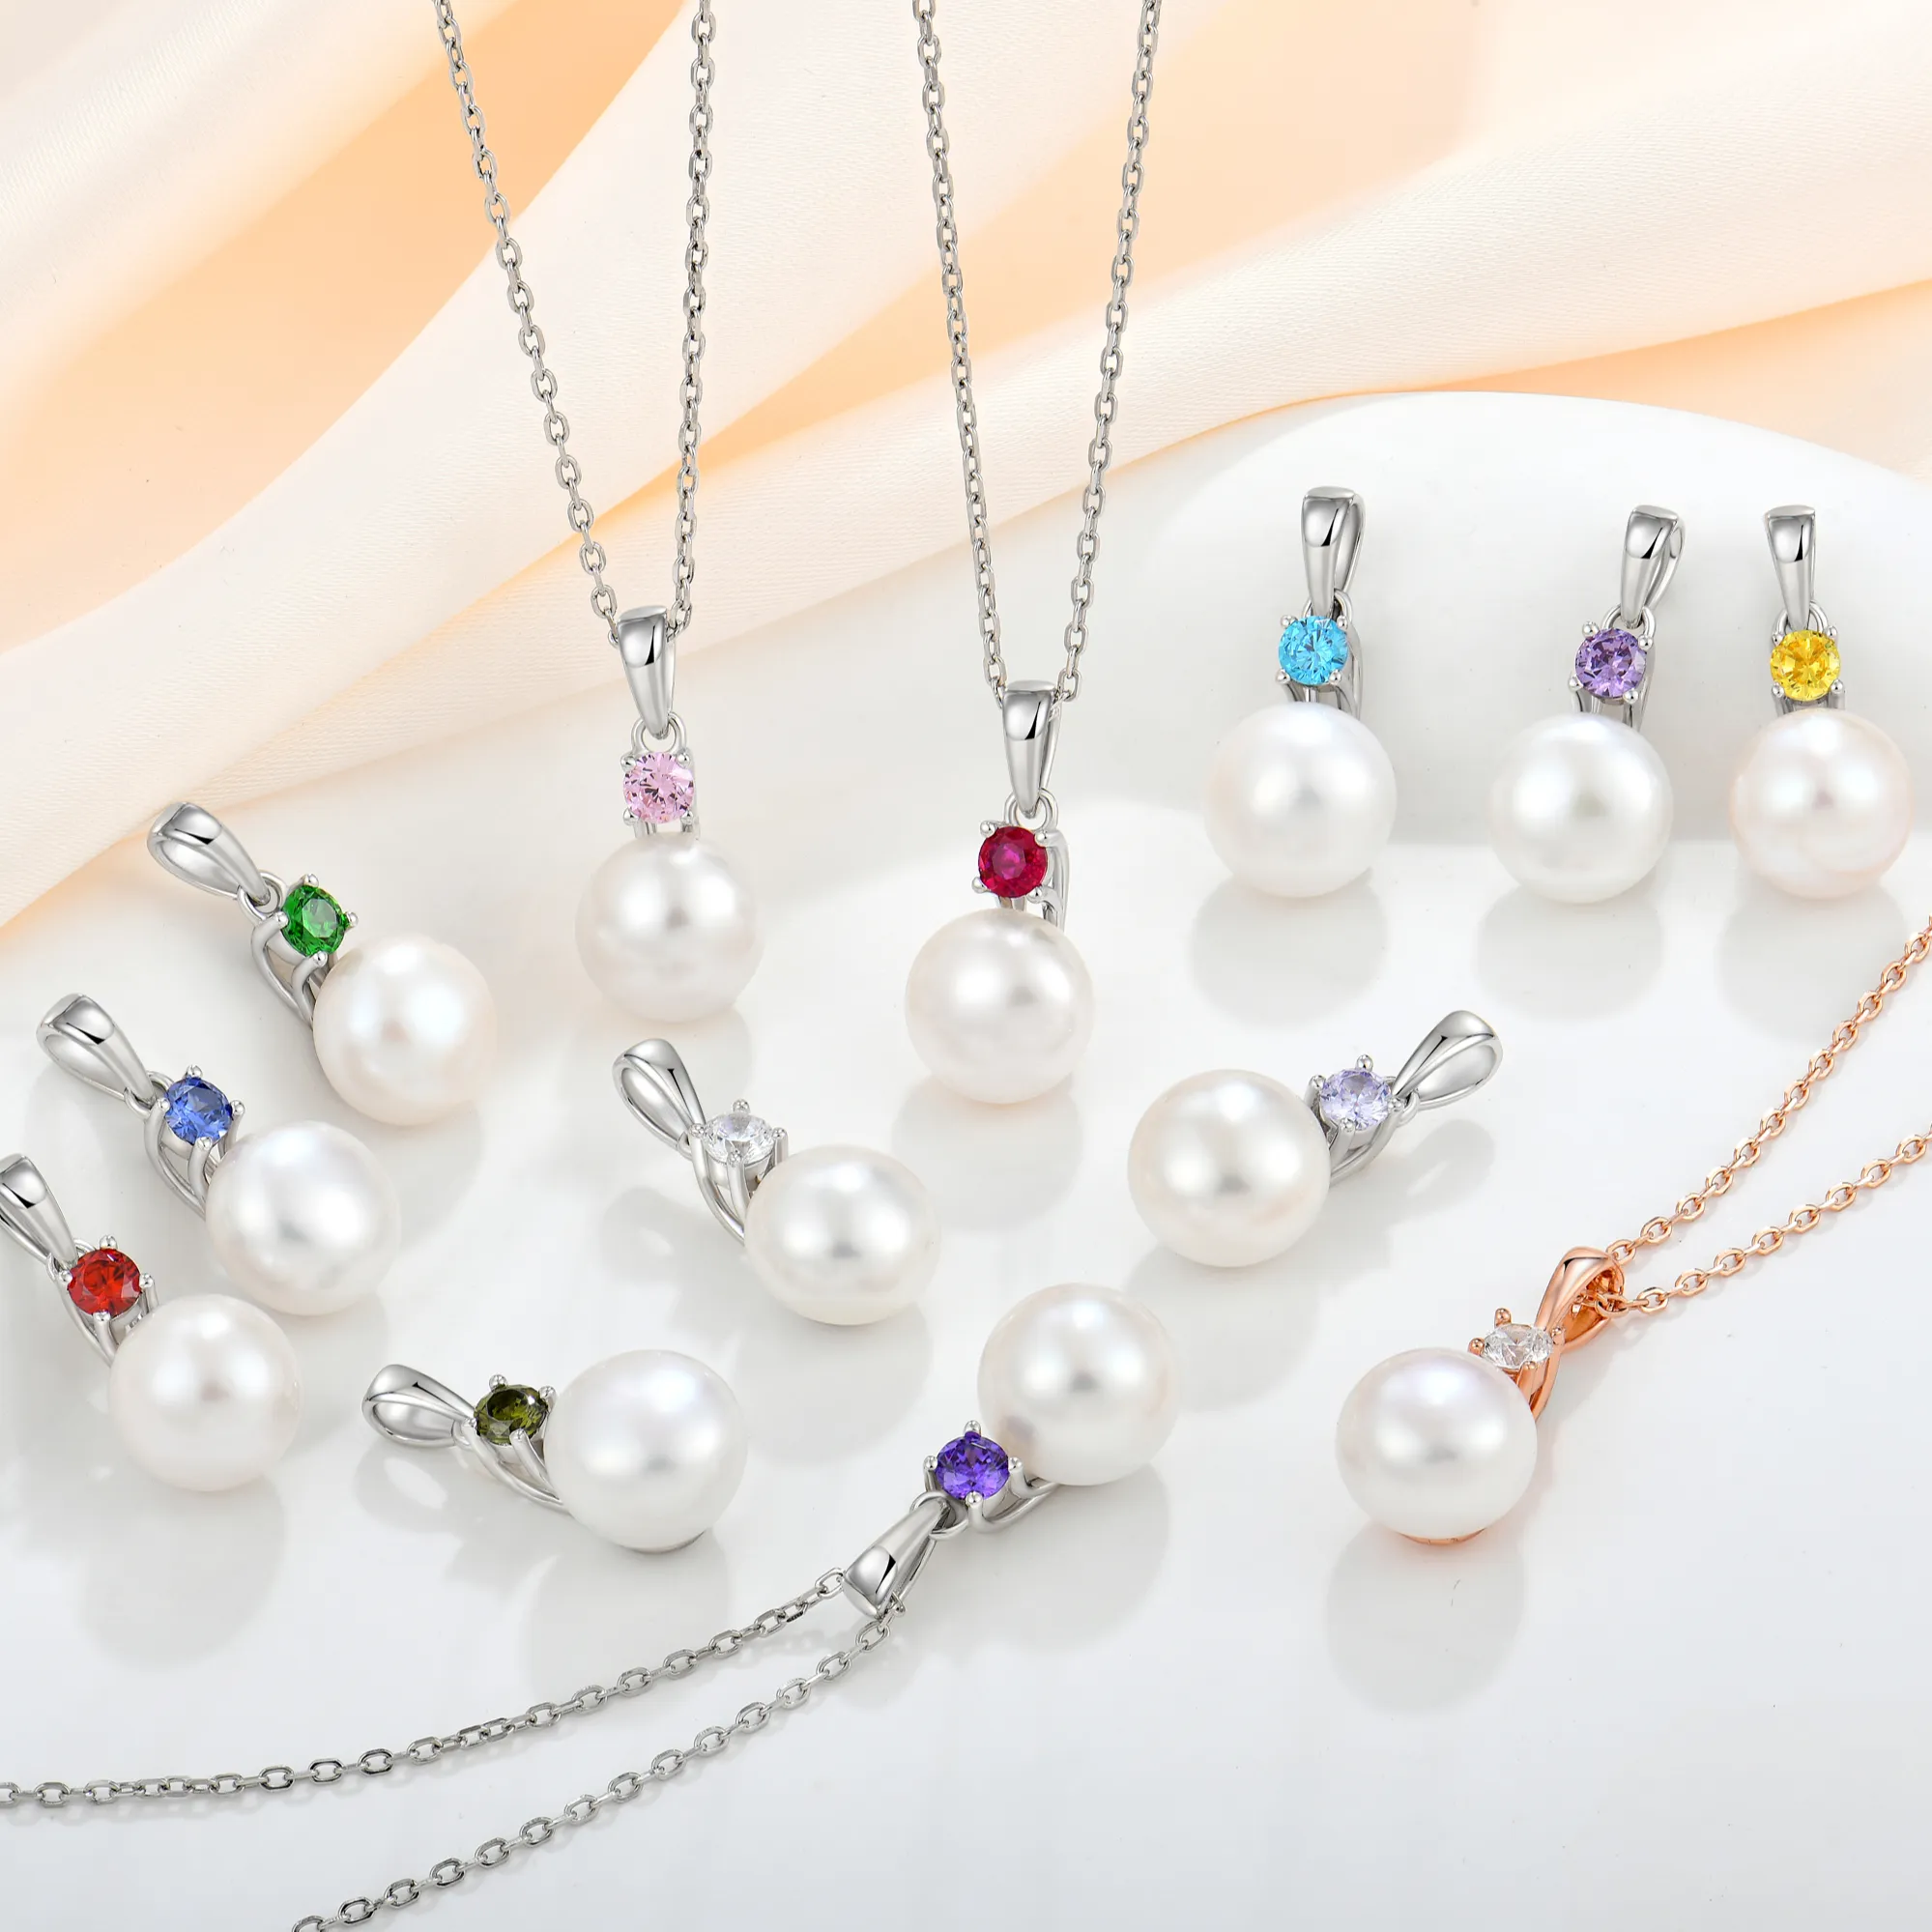 Personnalisé 925 bijoux en argent zircon perle collier 10mm véritable perle d'eau douce pendentif femmes filles mode bijoux colliers